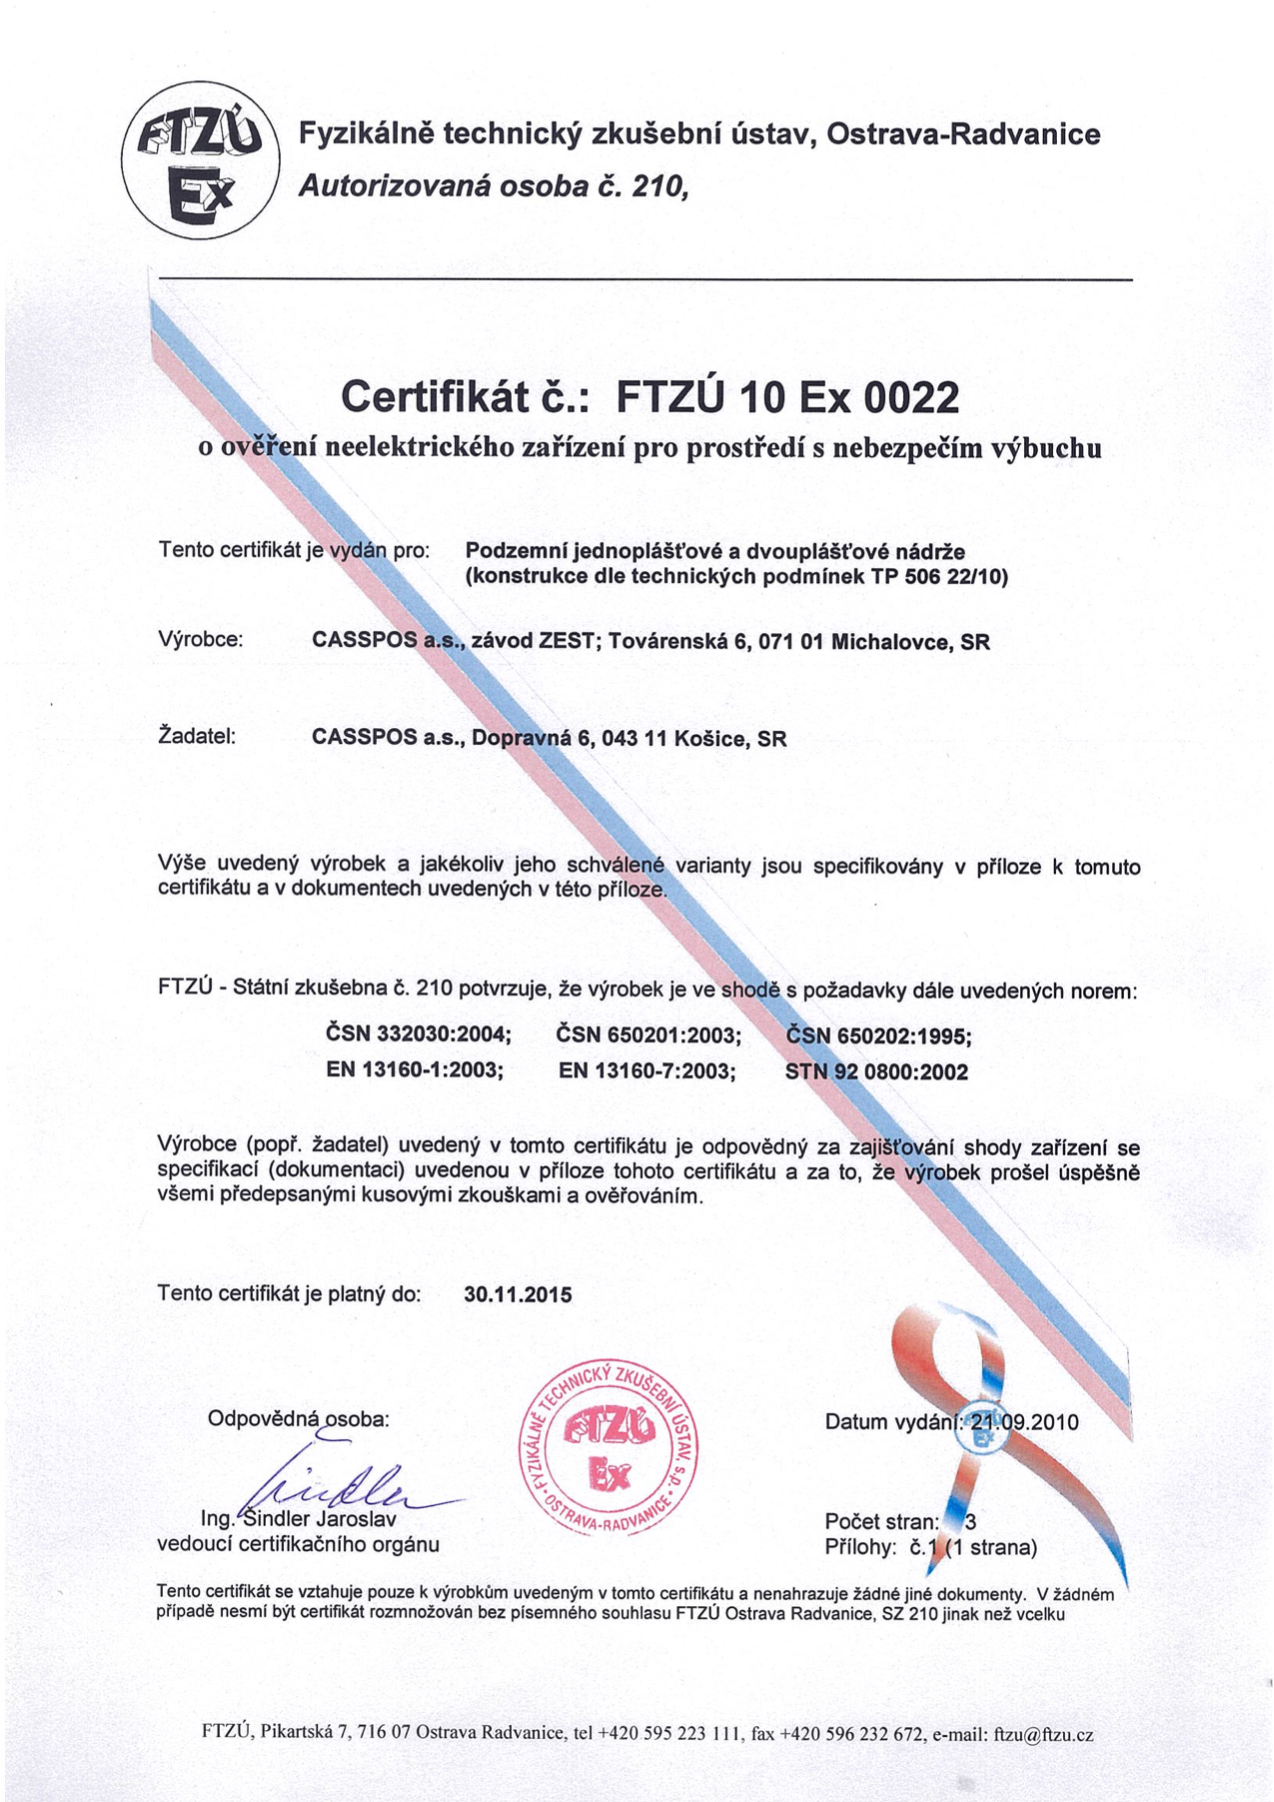 Certifikát FTZÚ 10 Ex 0022